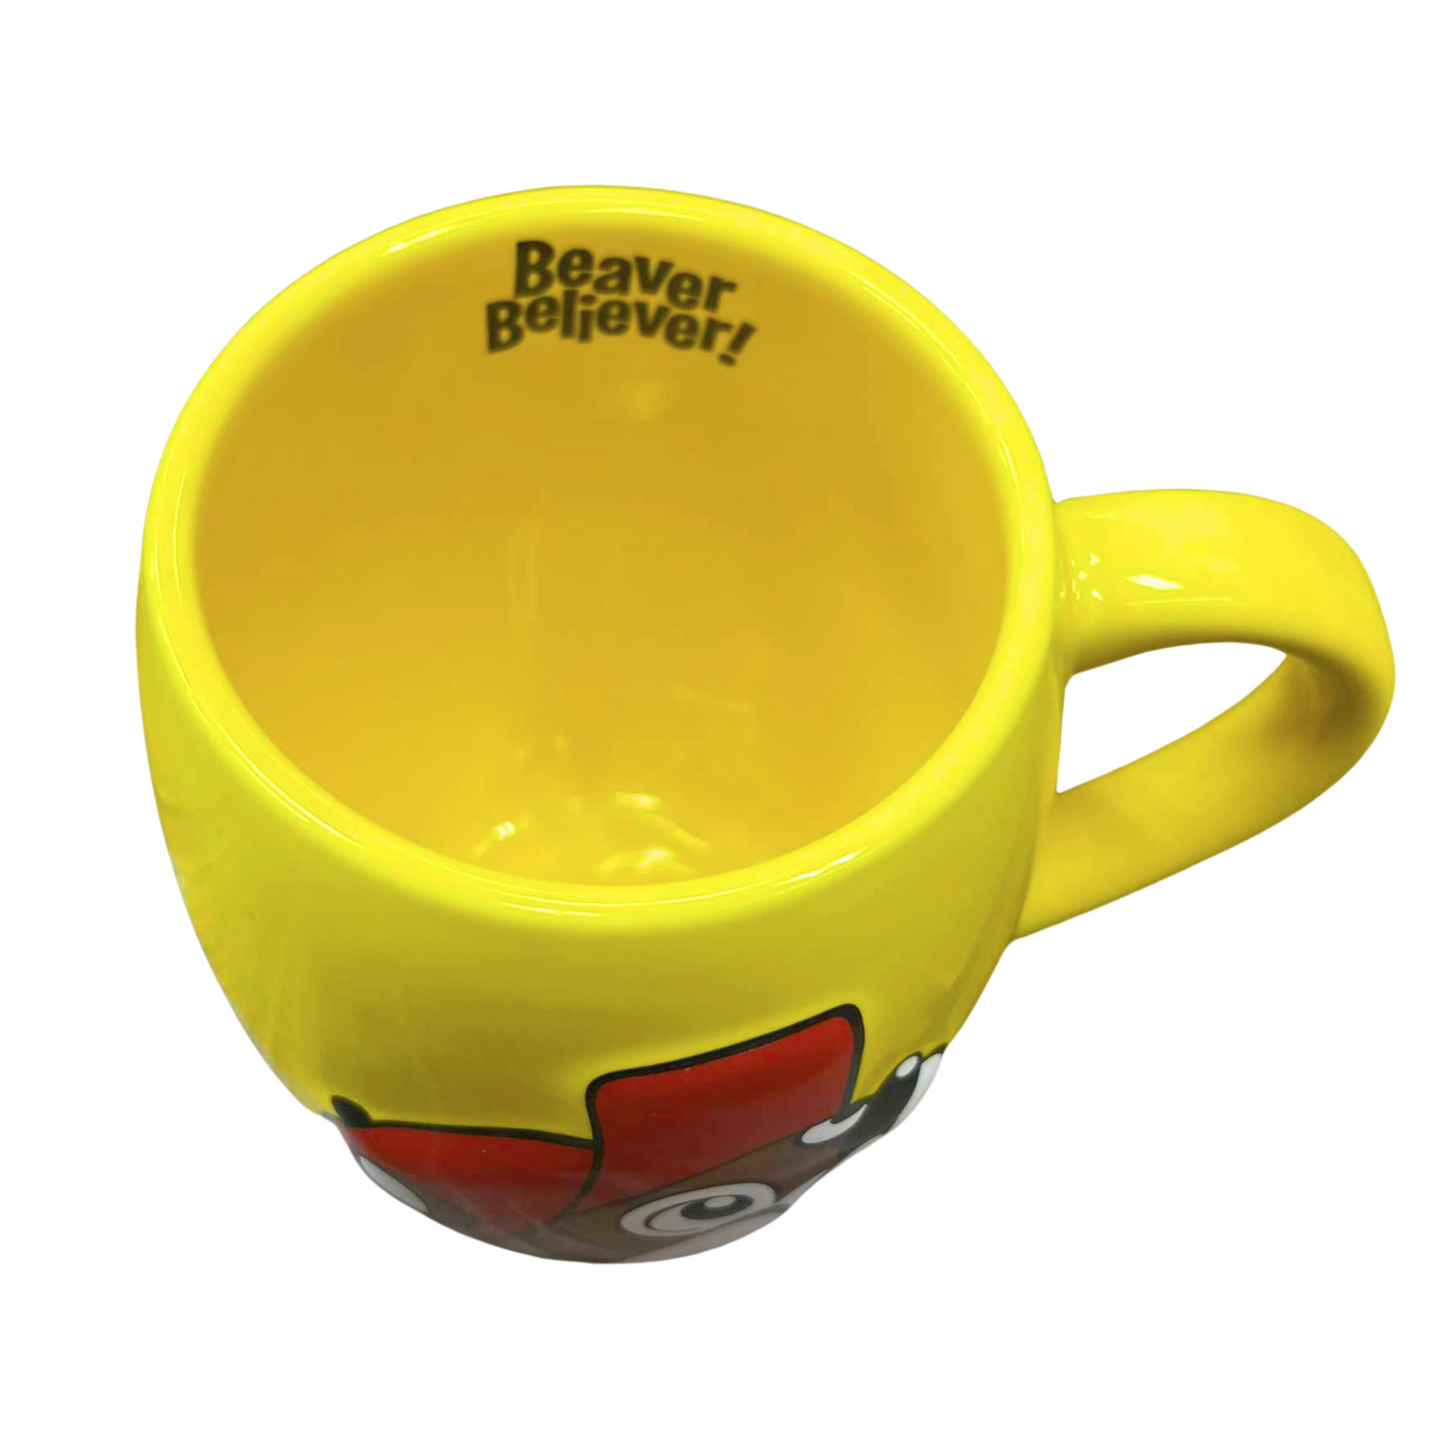 Buc-ee's Yellow Beaver Believer Mug buc ees buc ee's bucees buccees buc-ees